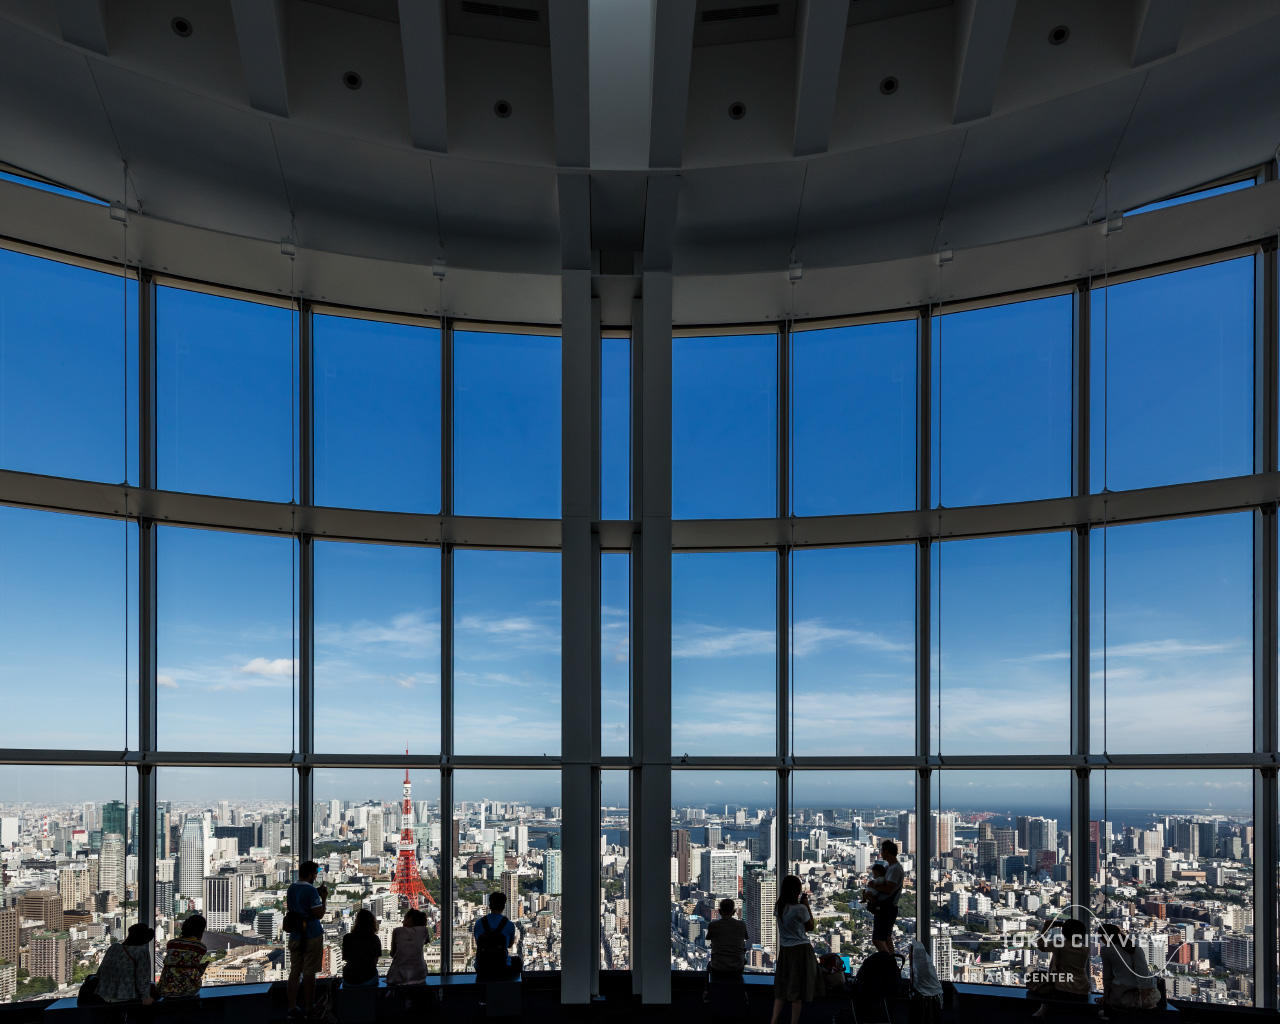 キラキラ東京の絶景を背景に 画像配布中 東京シティビュー Tokyo City View